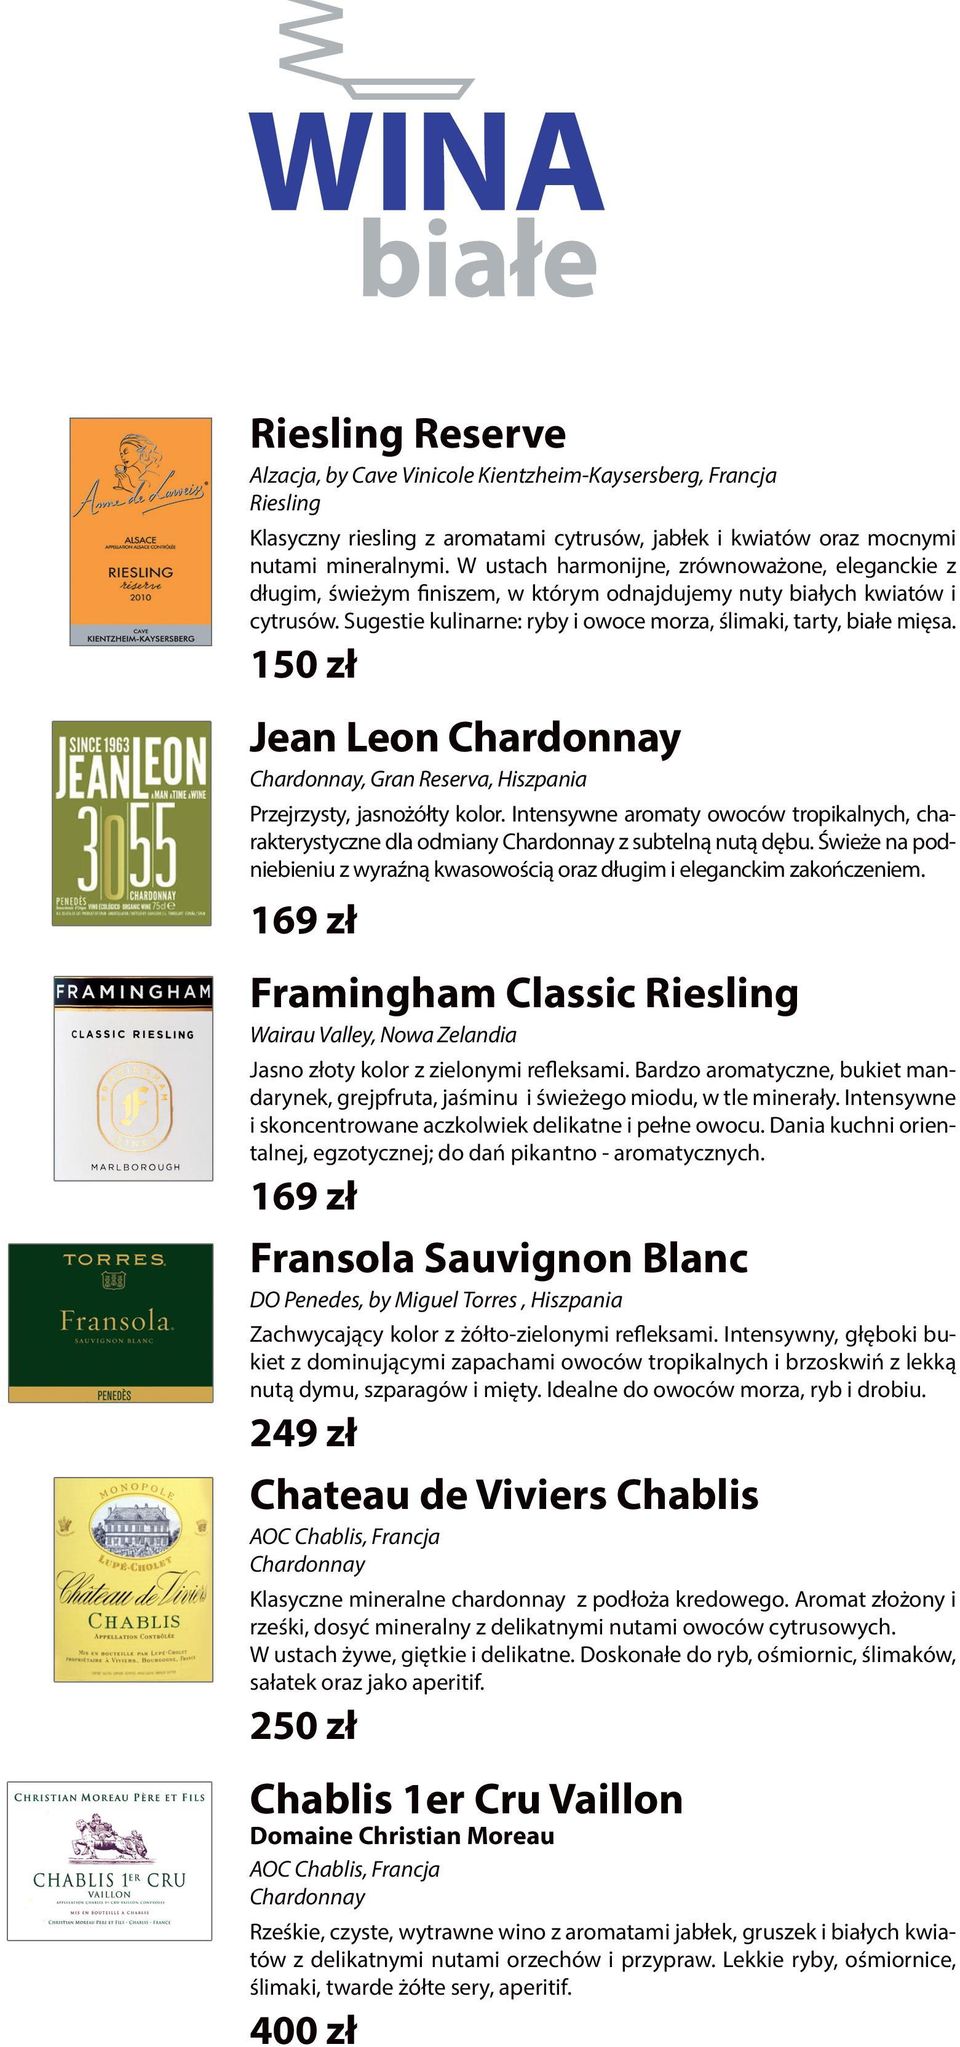 150 zł Jean Leon Chardonnay Chardonnay, Gran Reserva, Hiszpania Przejrzysty, jasnożółty kolor. Intensywne aromaty owoców tropikalnych, charakterystyczne dla odmiany Chardonnay z subtelną nutą dębu.